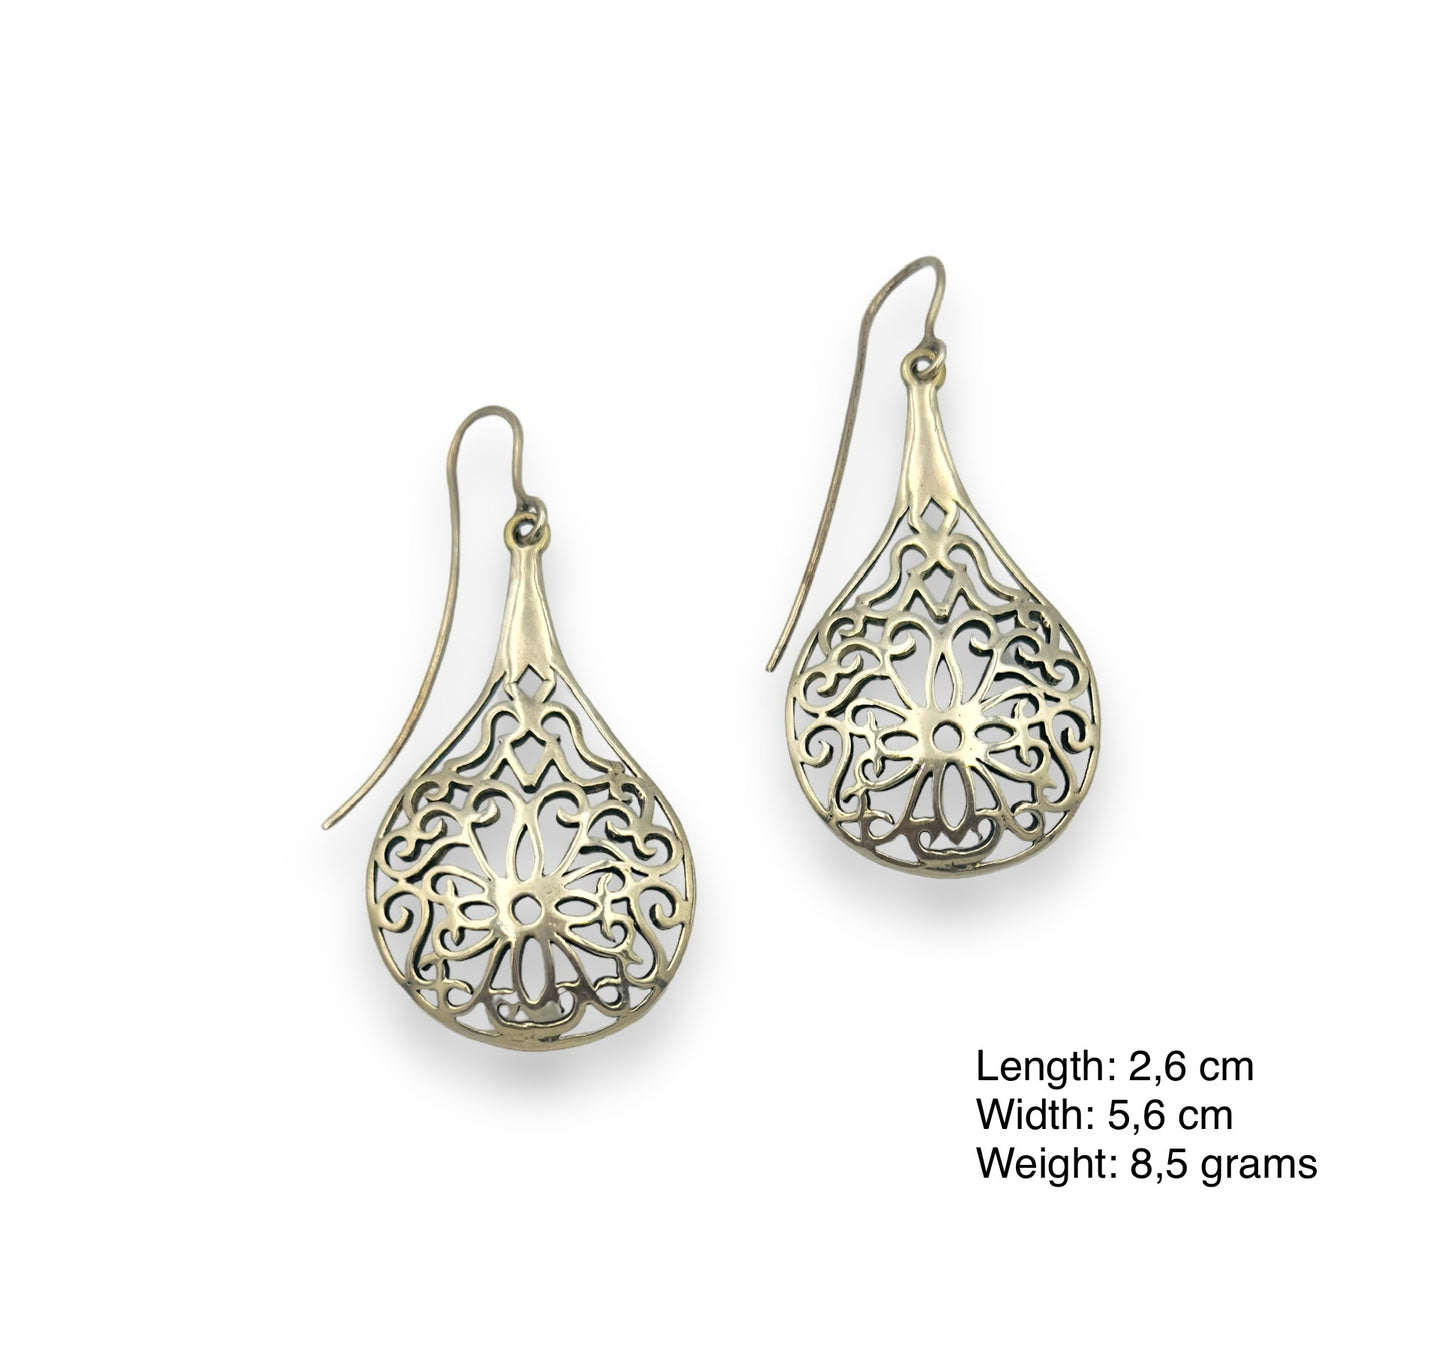 Silver Baroque style earrings